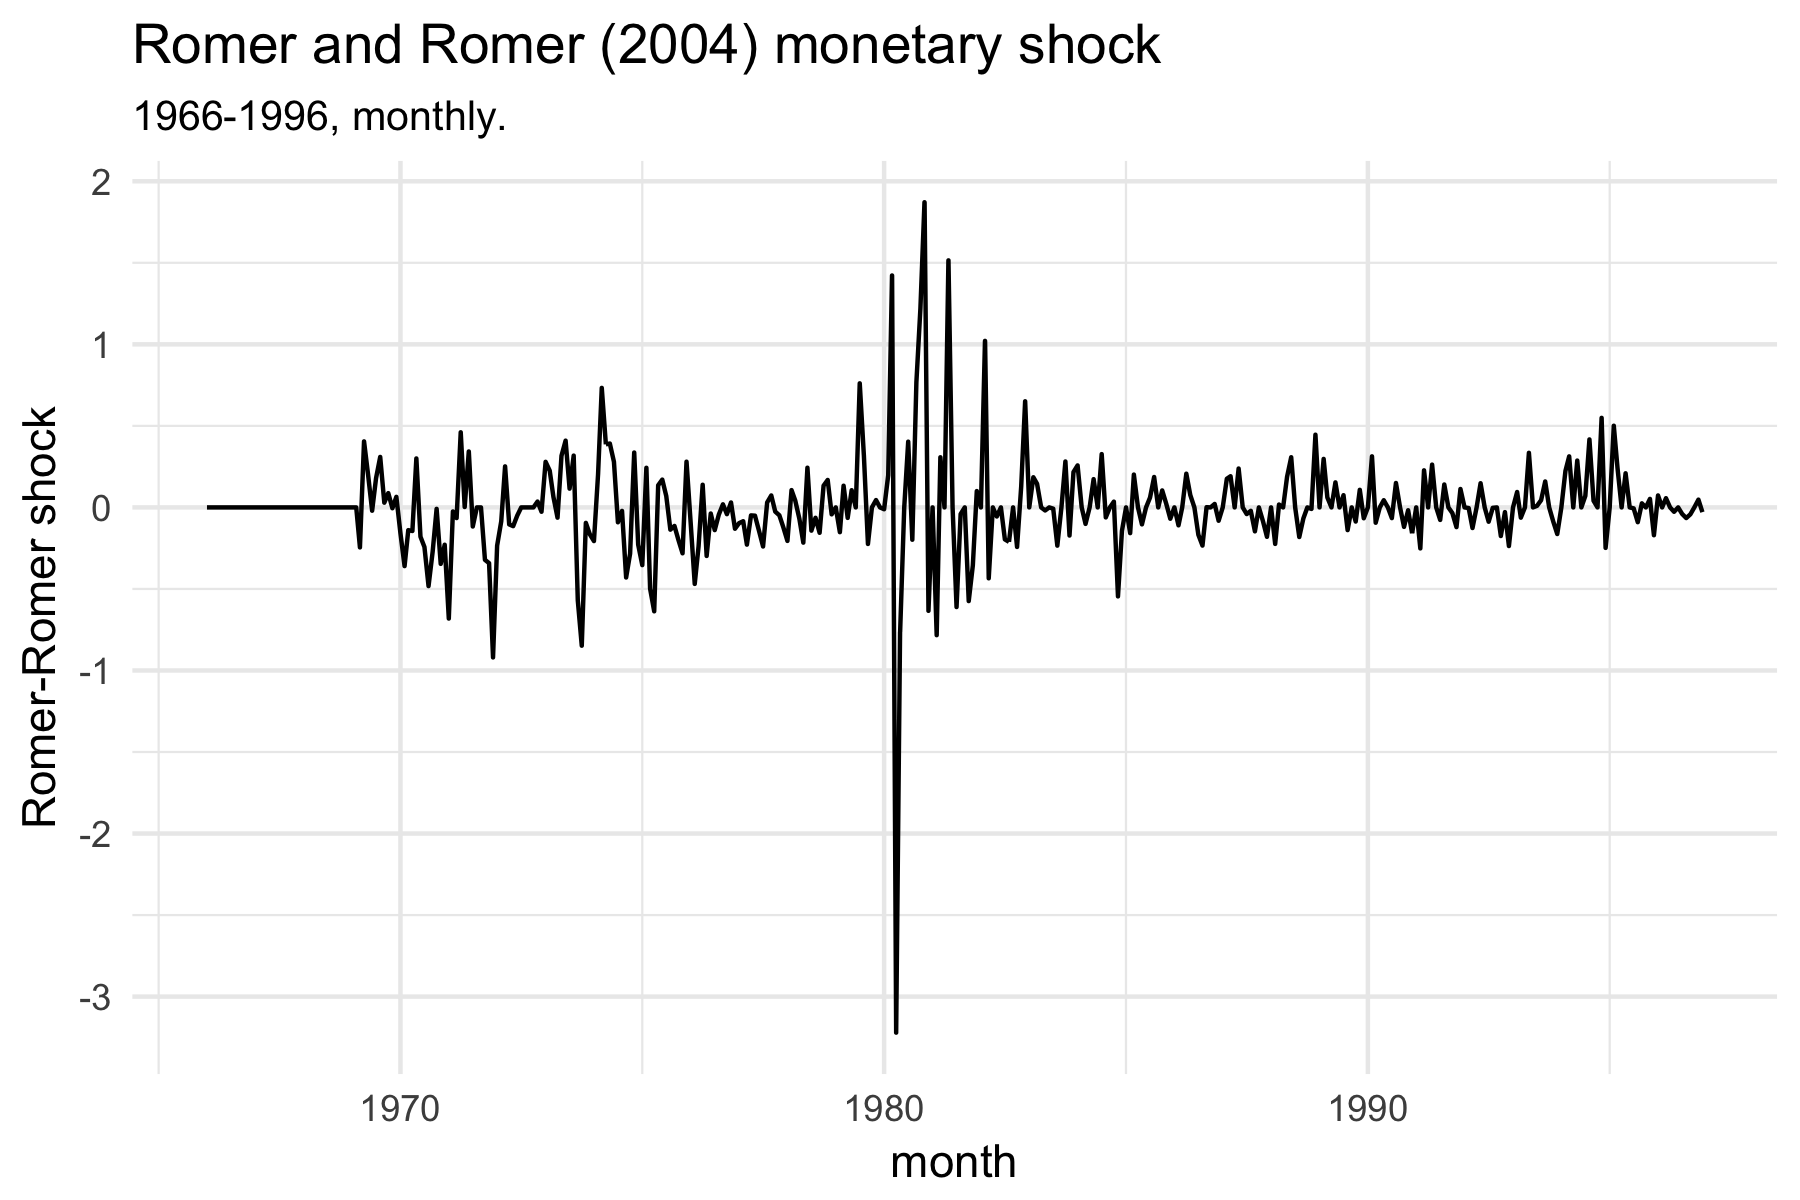 Romer-Romer monetary policy shocks